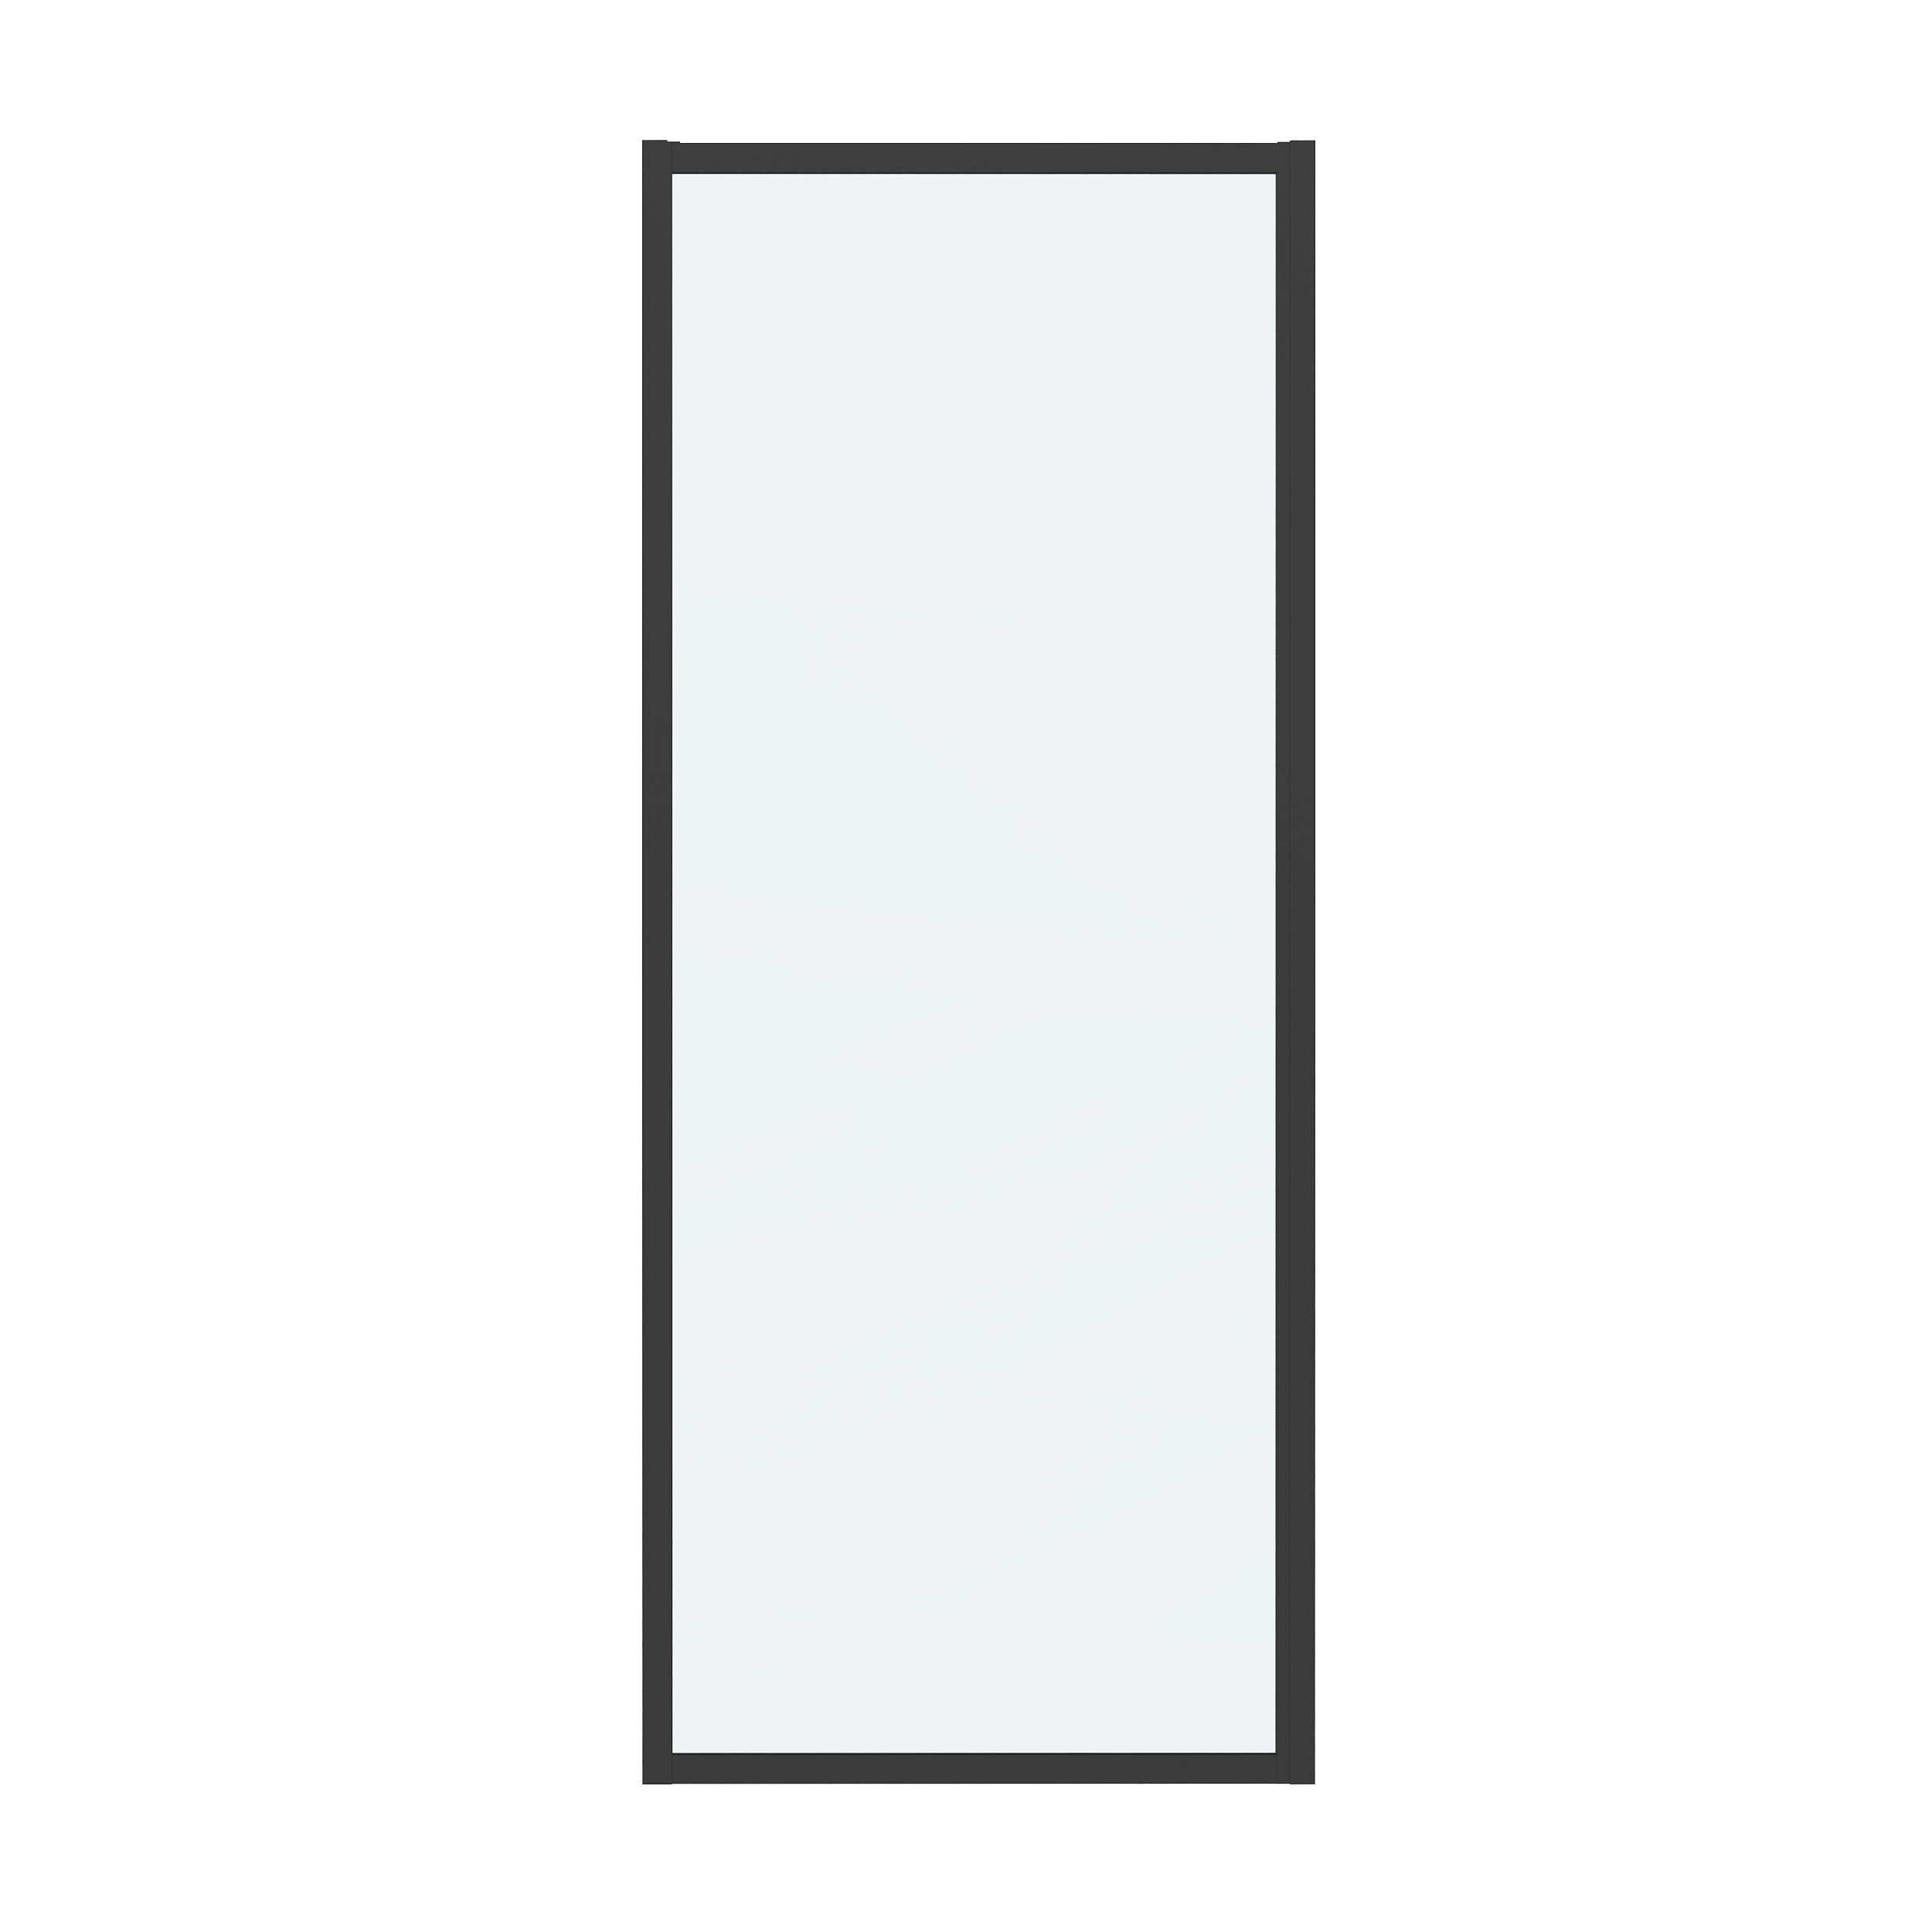 Боковая стенка Grossman Cosmo 70x195 200.K33.02.70.21.00 стекло прозрачное, профиль черный матовый